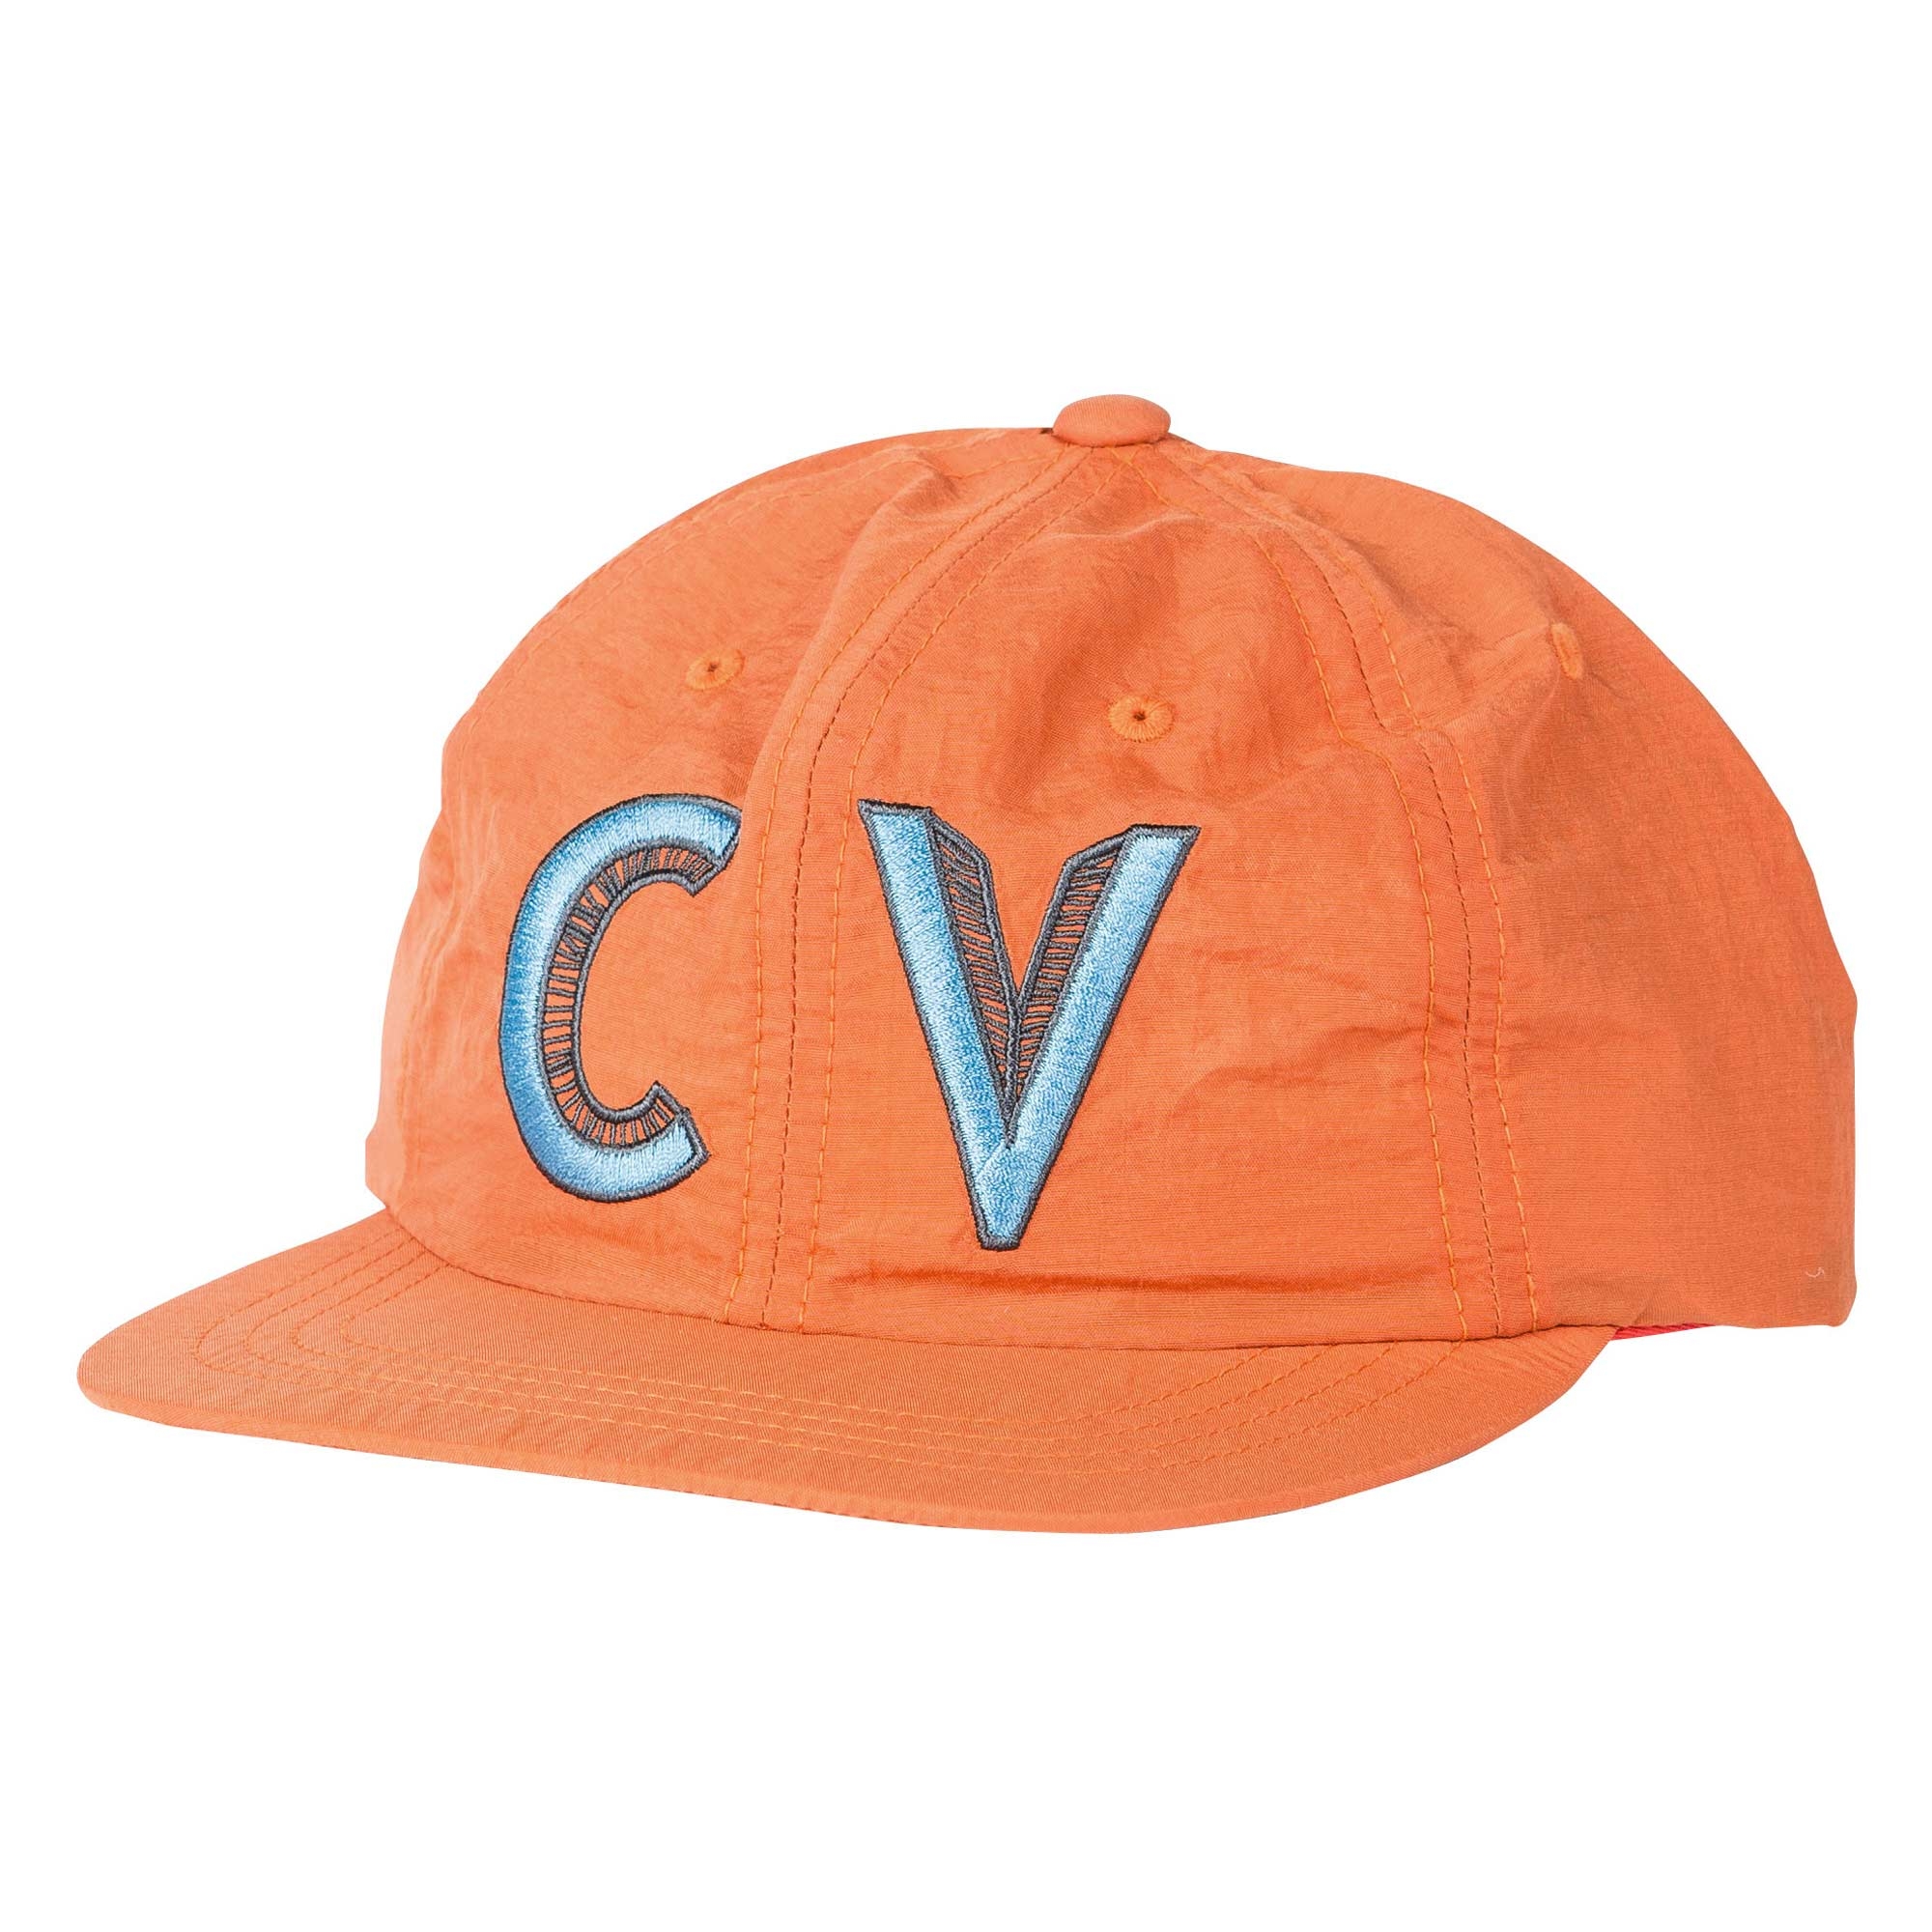 POLER Hat CV UNSTRUCTURED SOFT BRIM, burnt orange